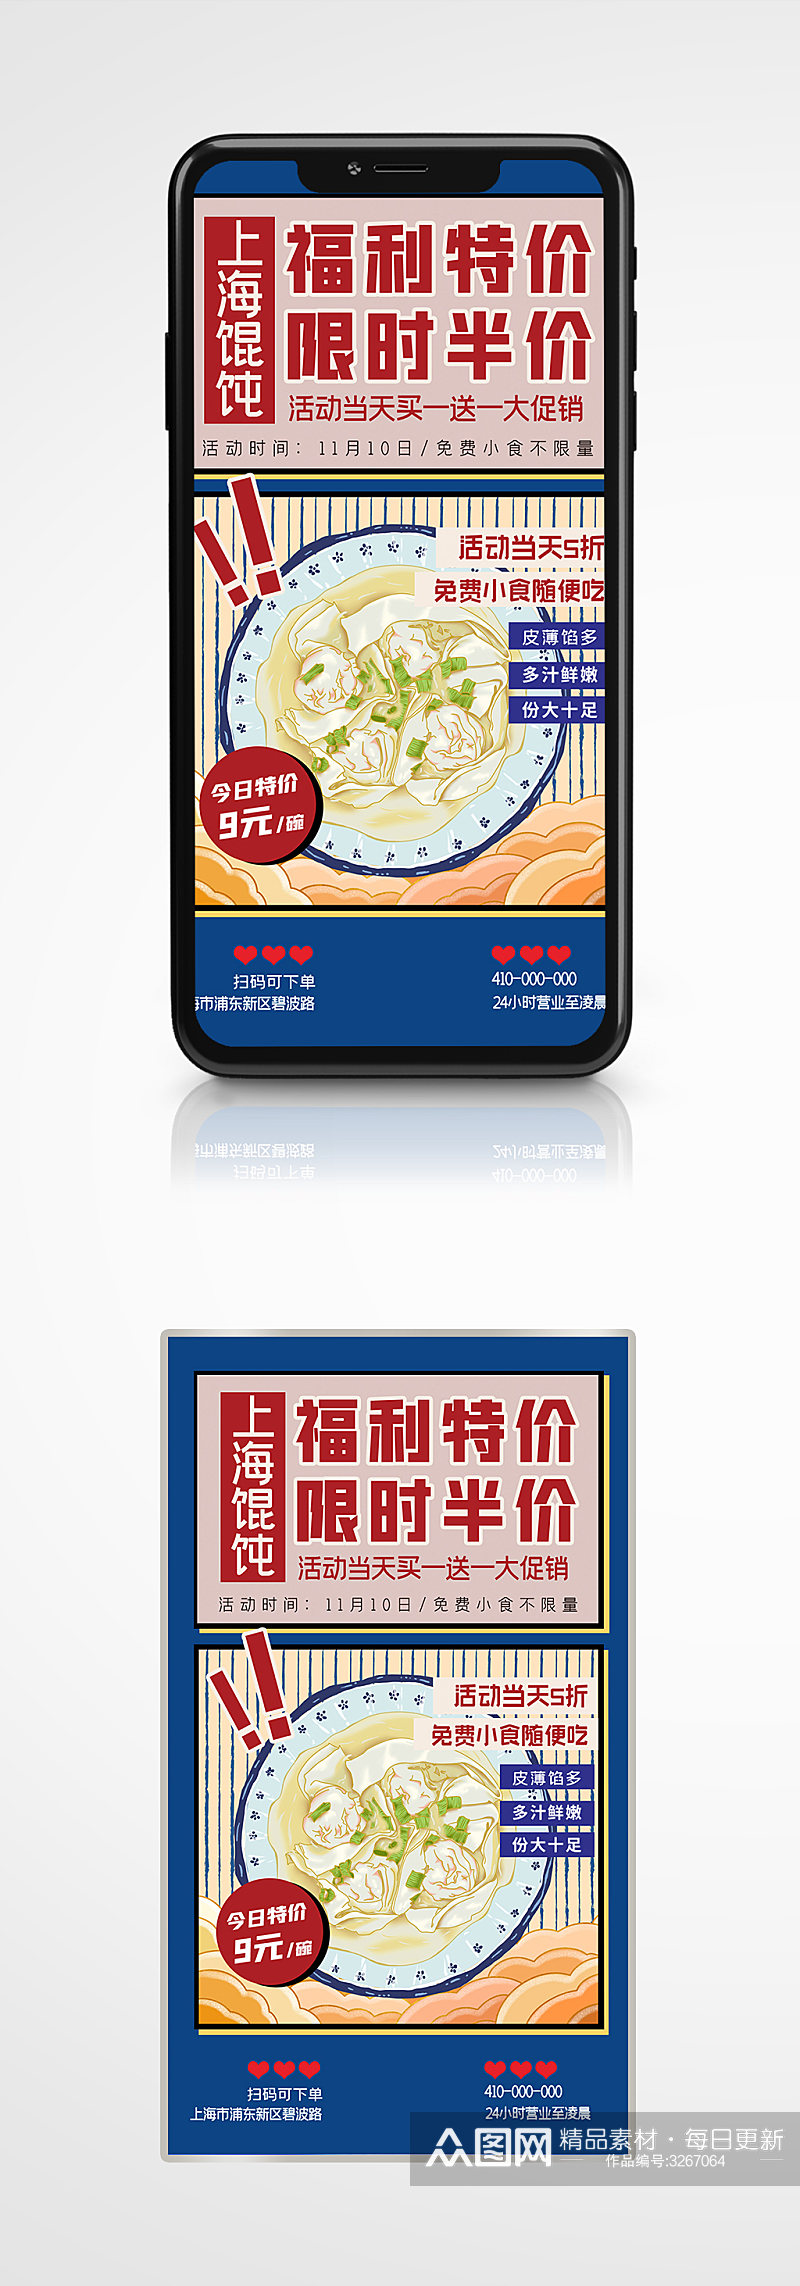 复古风特色小吃上海馄饨手机海报手绘美食素材